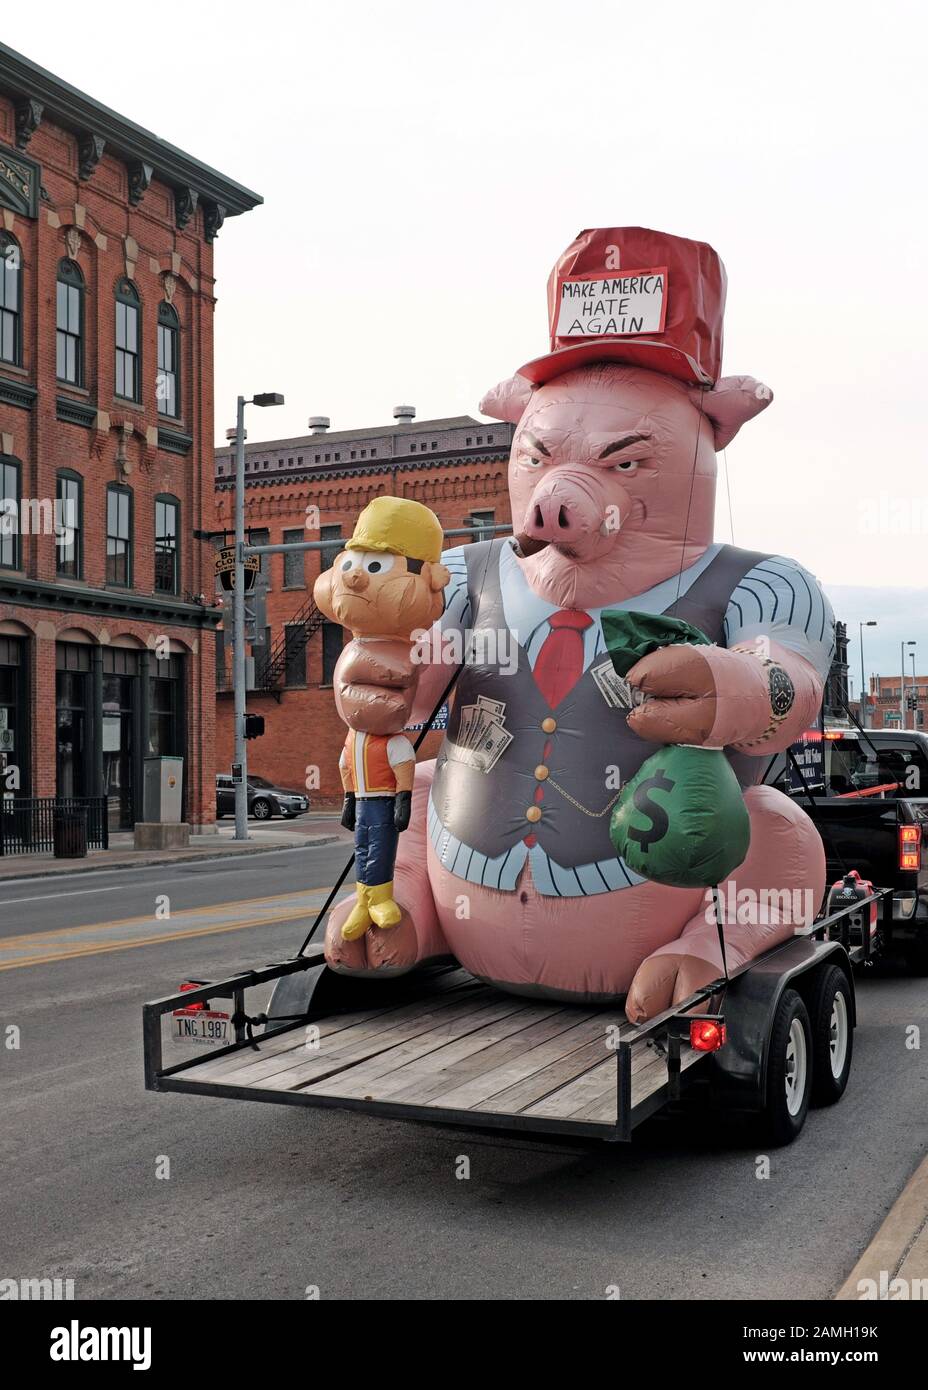 Ein aufblasbares Schwein mit einem Hut, der "wieder Amerika Hassen" ausgibt, repräsentiert Gier und Gewinn auf Kosten der Arbeiterklasse. Stockfoto